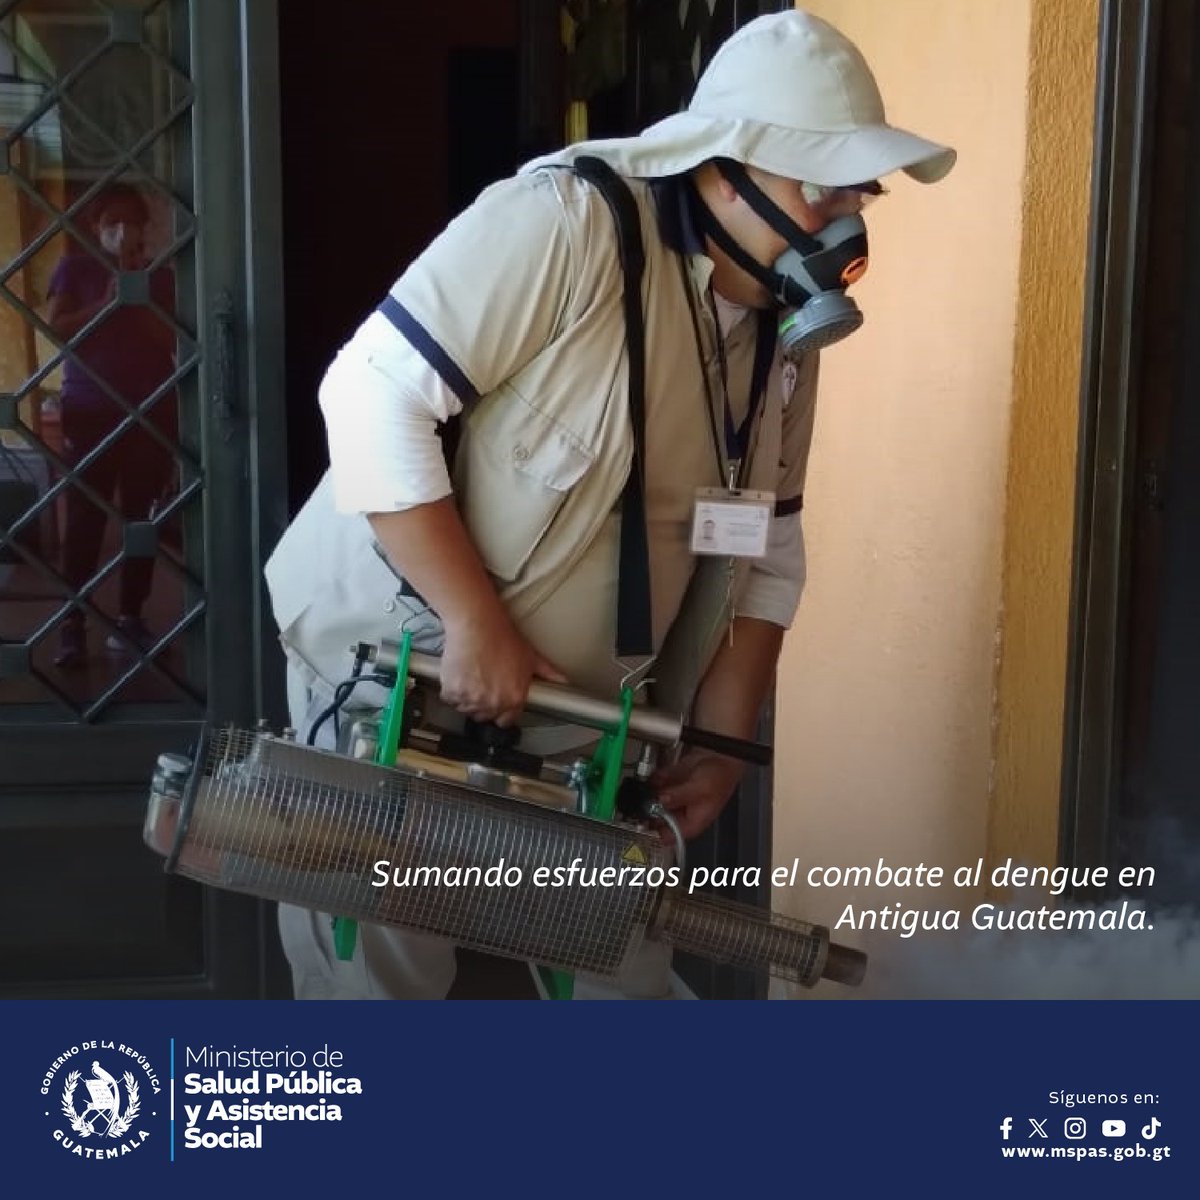 ¡Unidos contra el dengue en Antigua Guatemala! Personal de salud y comunidad trabajan juntos en jornadas de prevención. Eliminemos criaderos de mosquitos y protejamos nuestra salud. ¡Tapemos recipientes y eliminemos criaderos! 📲prensa.gob.gt/comunicado/sum… #GuatemalaSaleAdelante